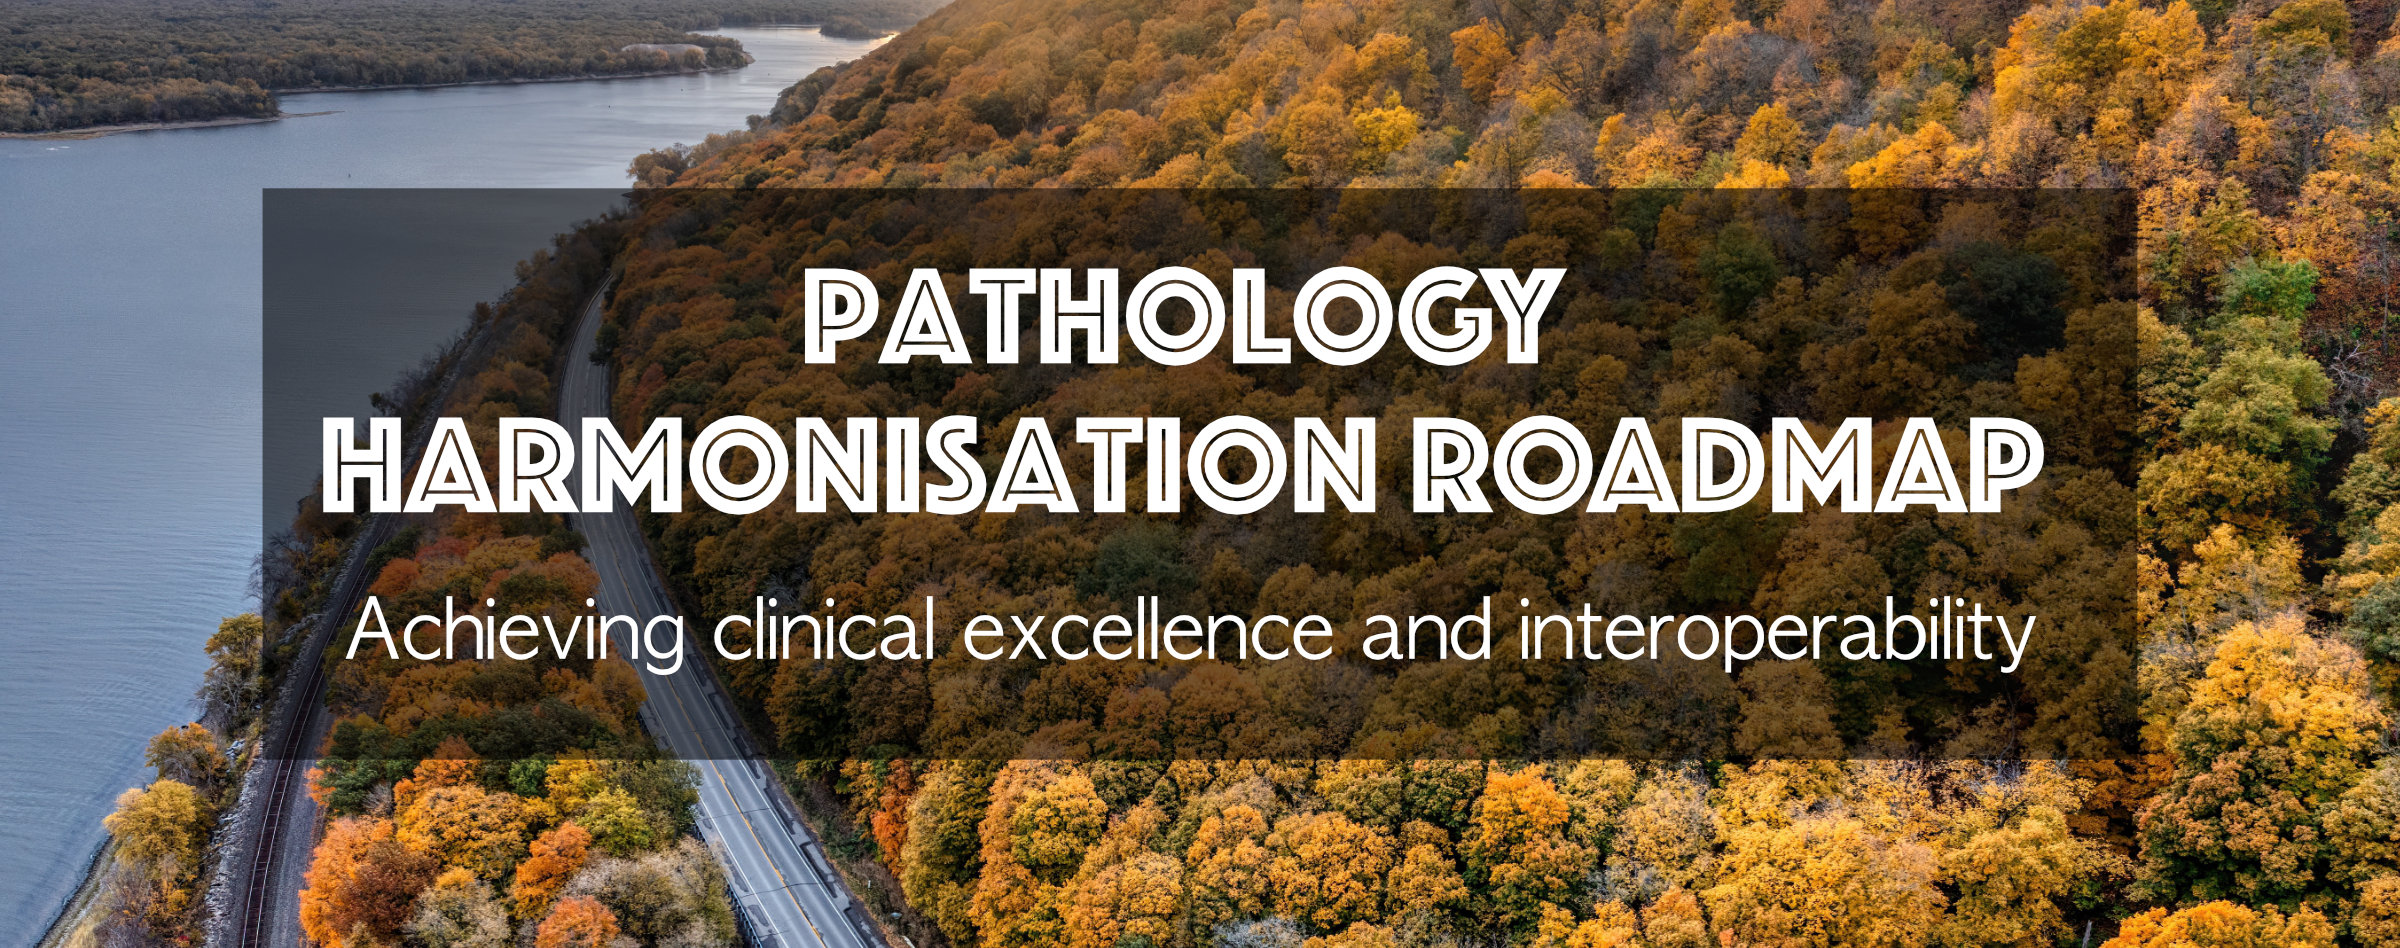 Pathology Harmonisation Roadmap